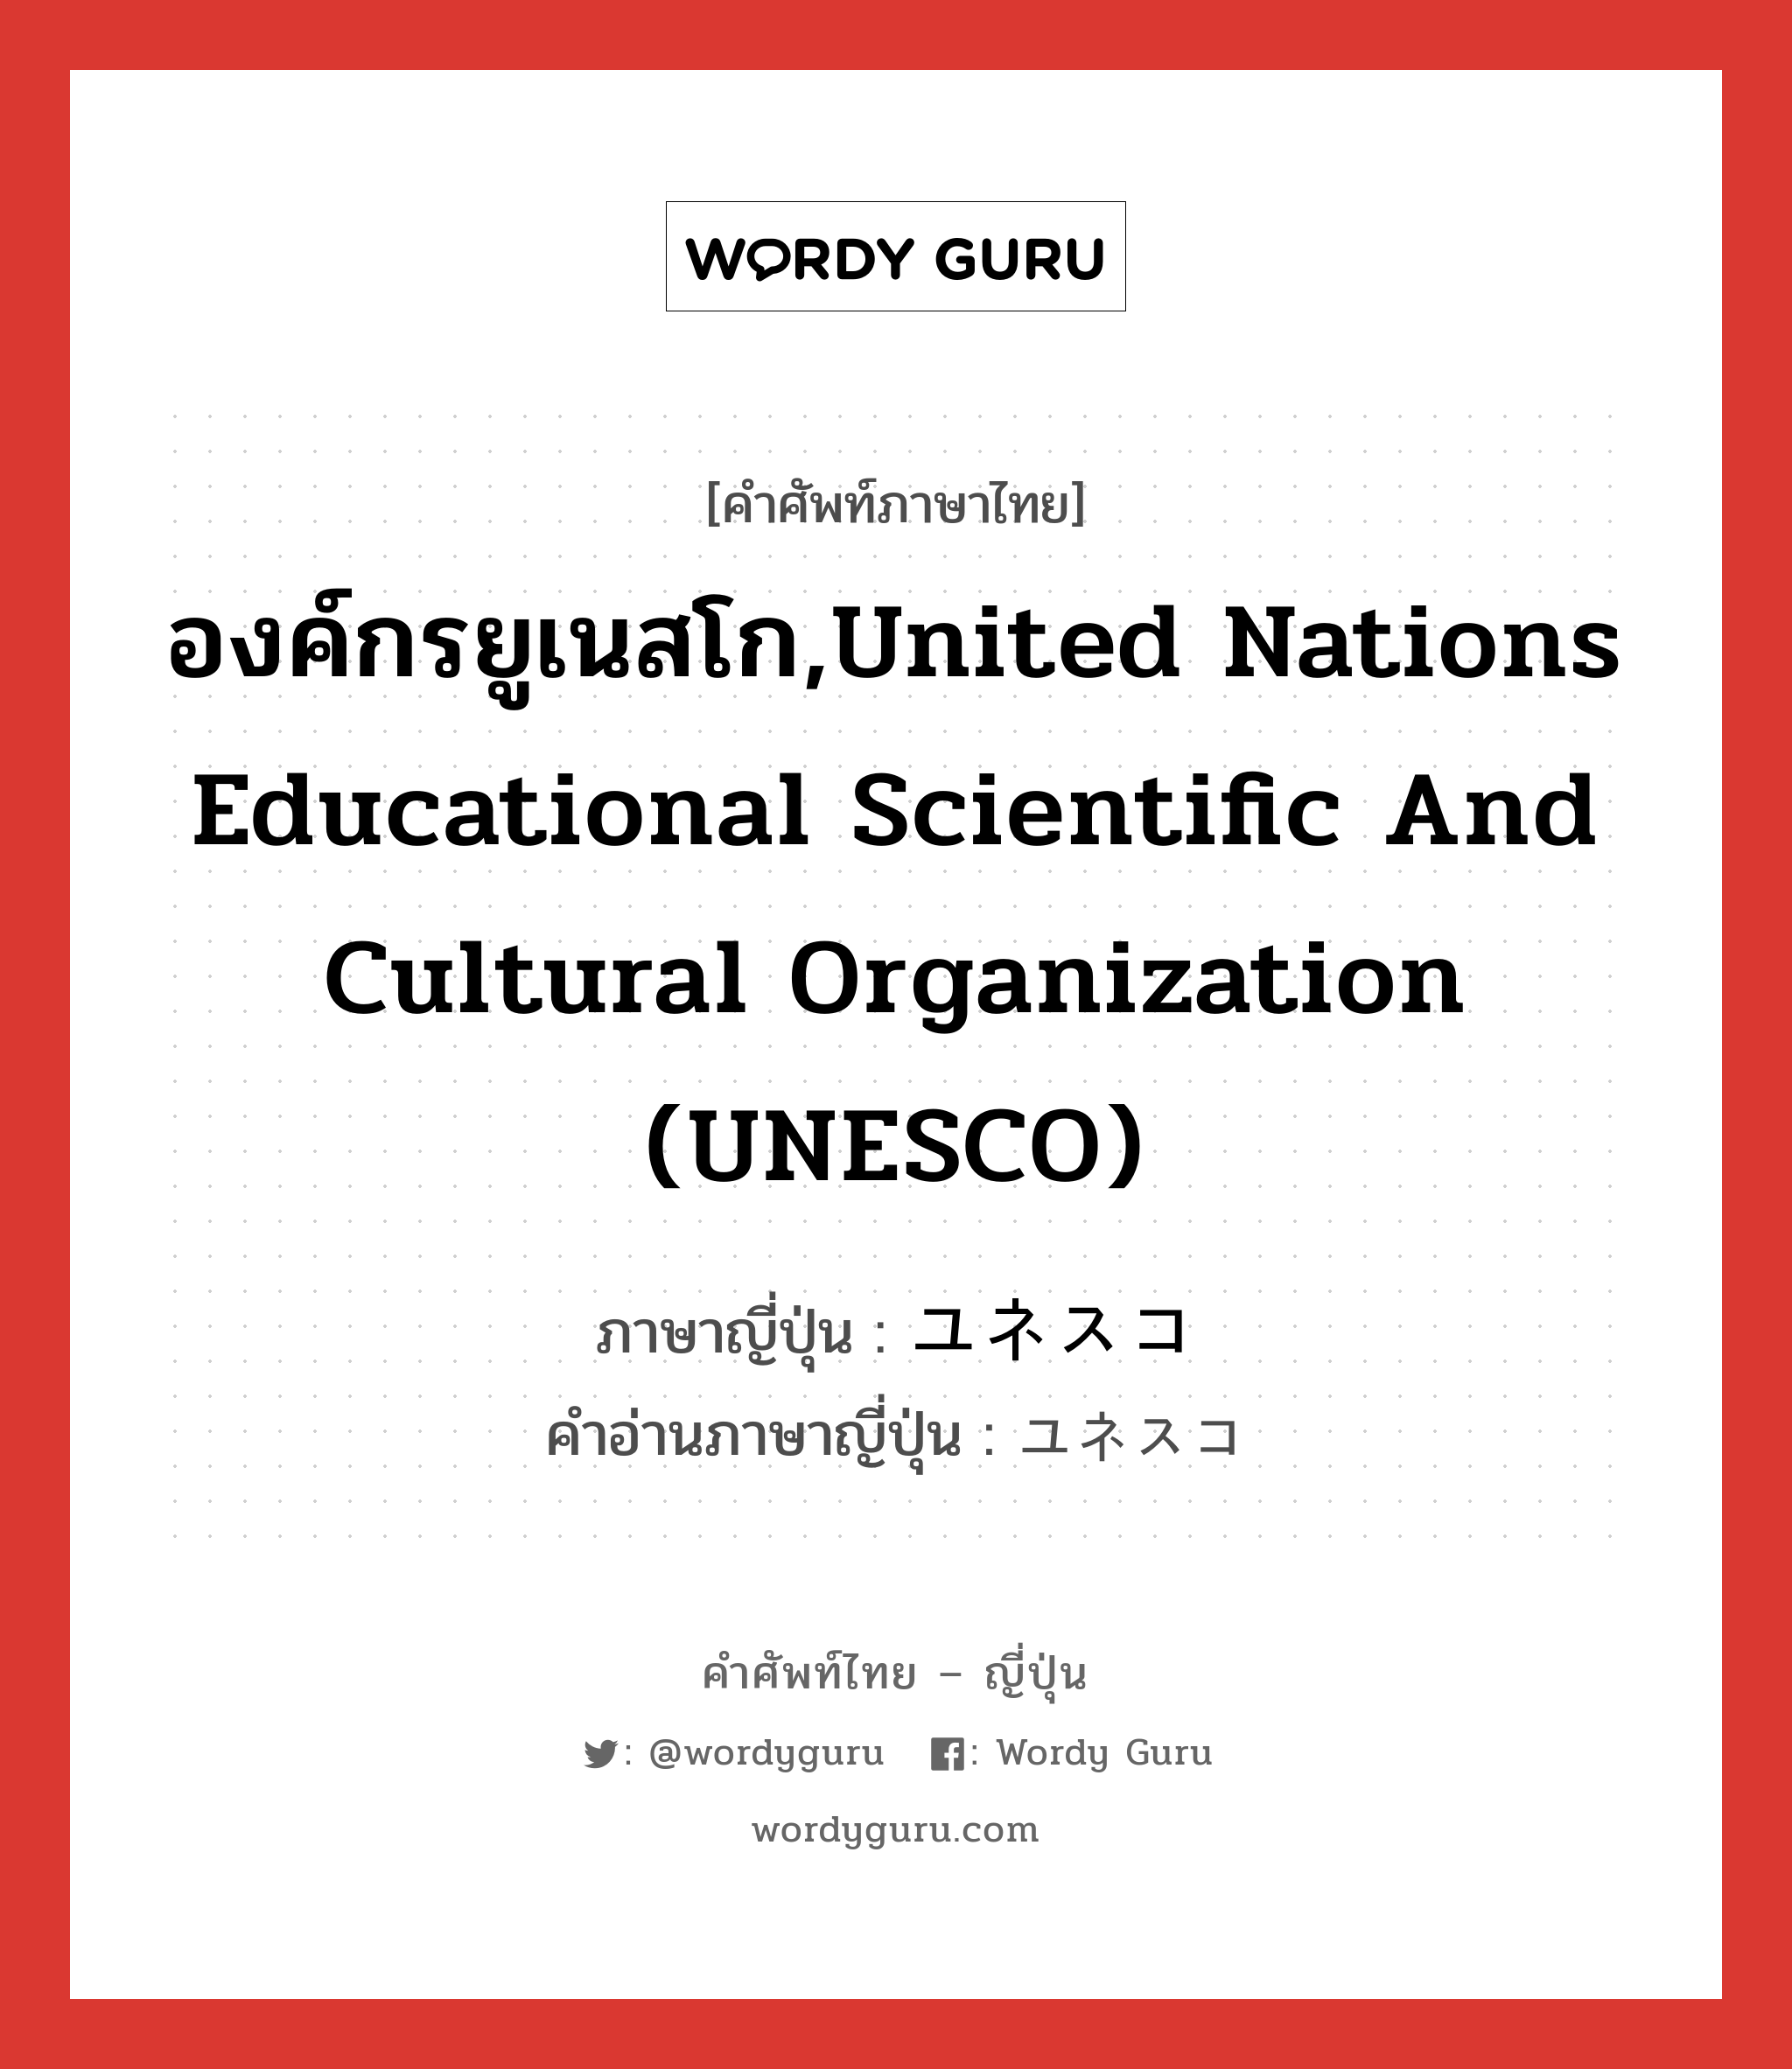 องค์กรยูเนสโก,United Nations Educational Scientific and Cultural Organization (UNESCO) ภาษาญี่ปุ่นคืออะไร, คำศัพท์ภาษาไทย - ญี่ปุ่น องค์กรยูเนสโก,United Nations Educational Scientific and Cultural Organization (UNESCO) ภาษาญี่ปุ่น ユネスコ คำอ่านภาษาญี่ปุ่น ユネスコ หมวด n หมวด n